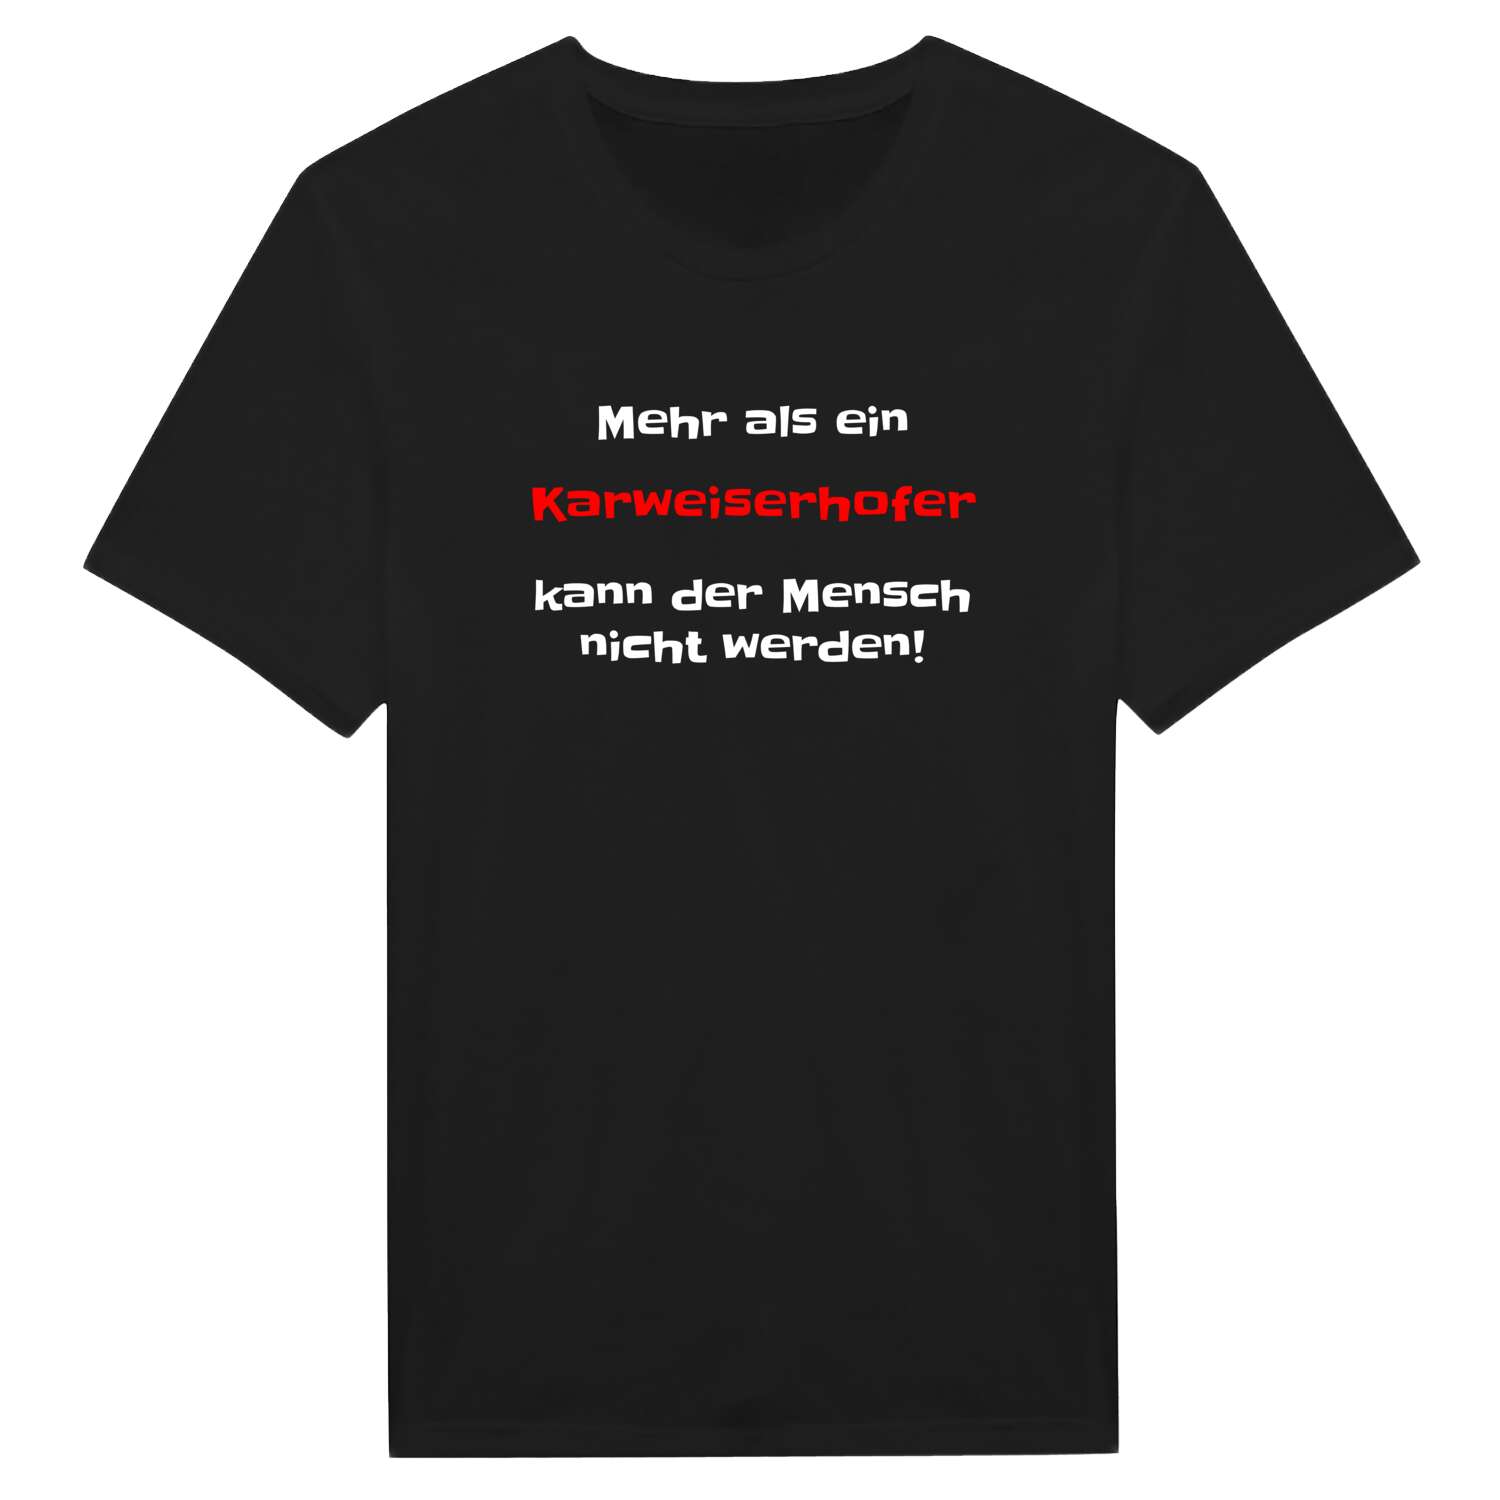 Karweiserhof T-Shirt »Mehr als ein«